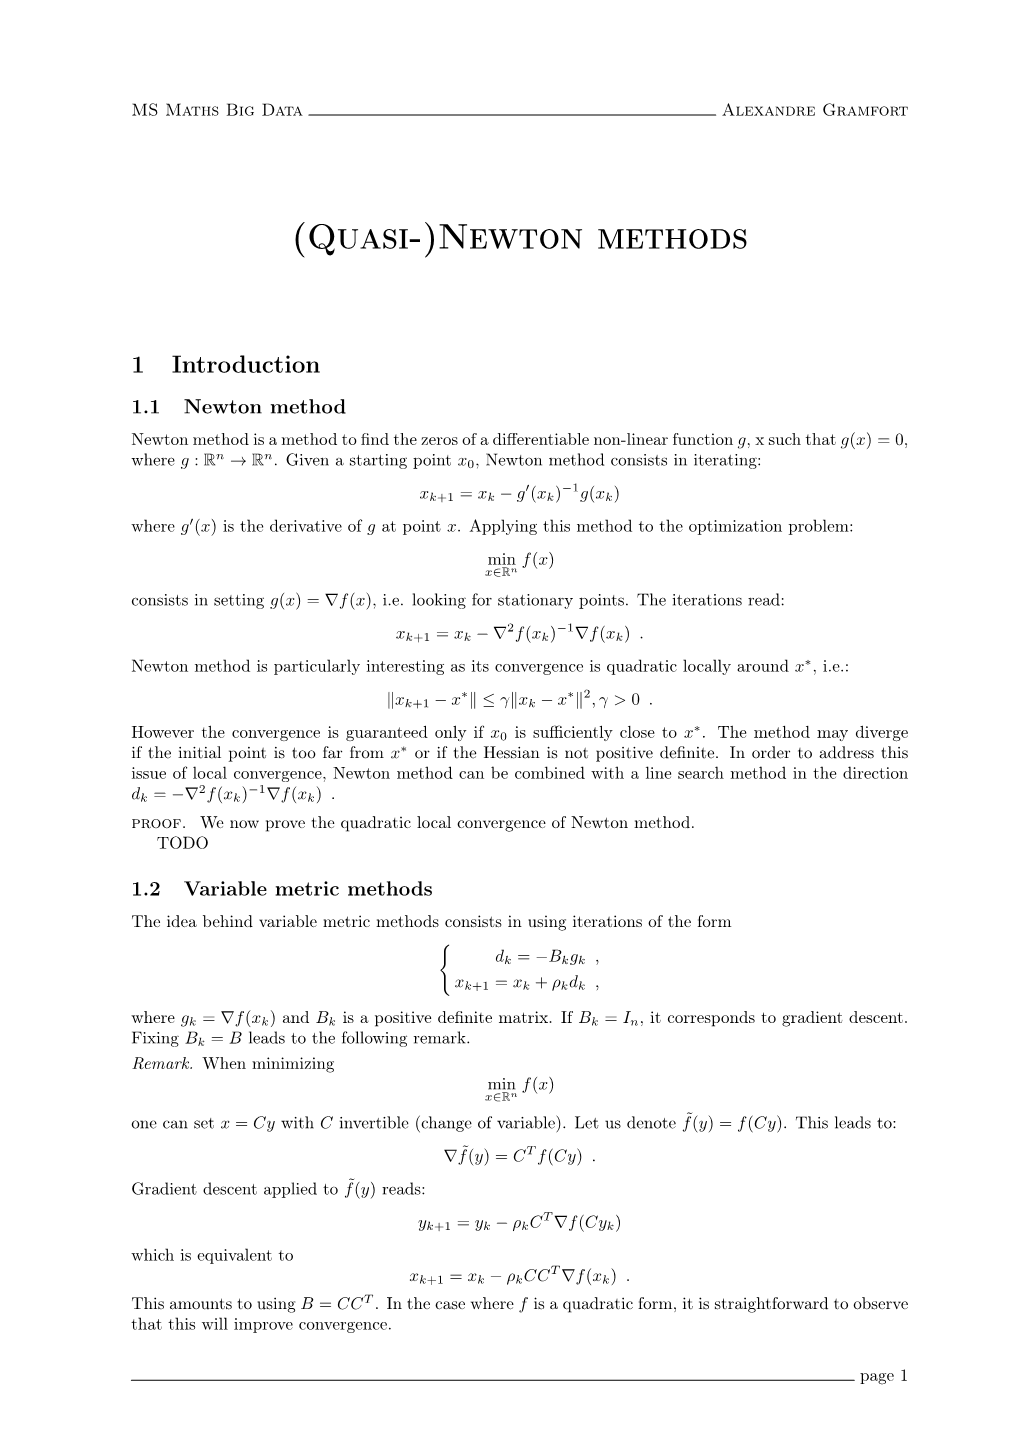 (Quasi-)Newton Methods